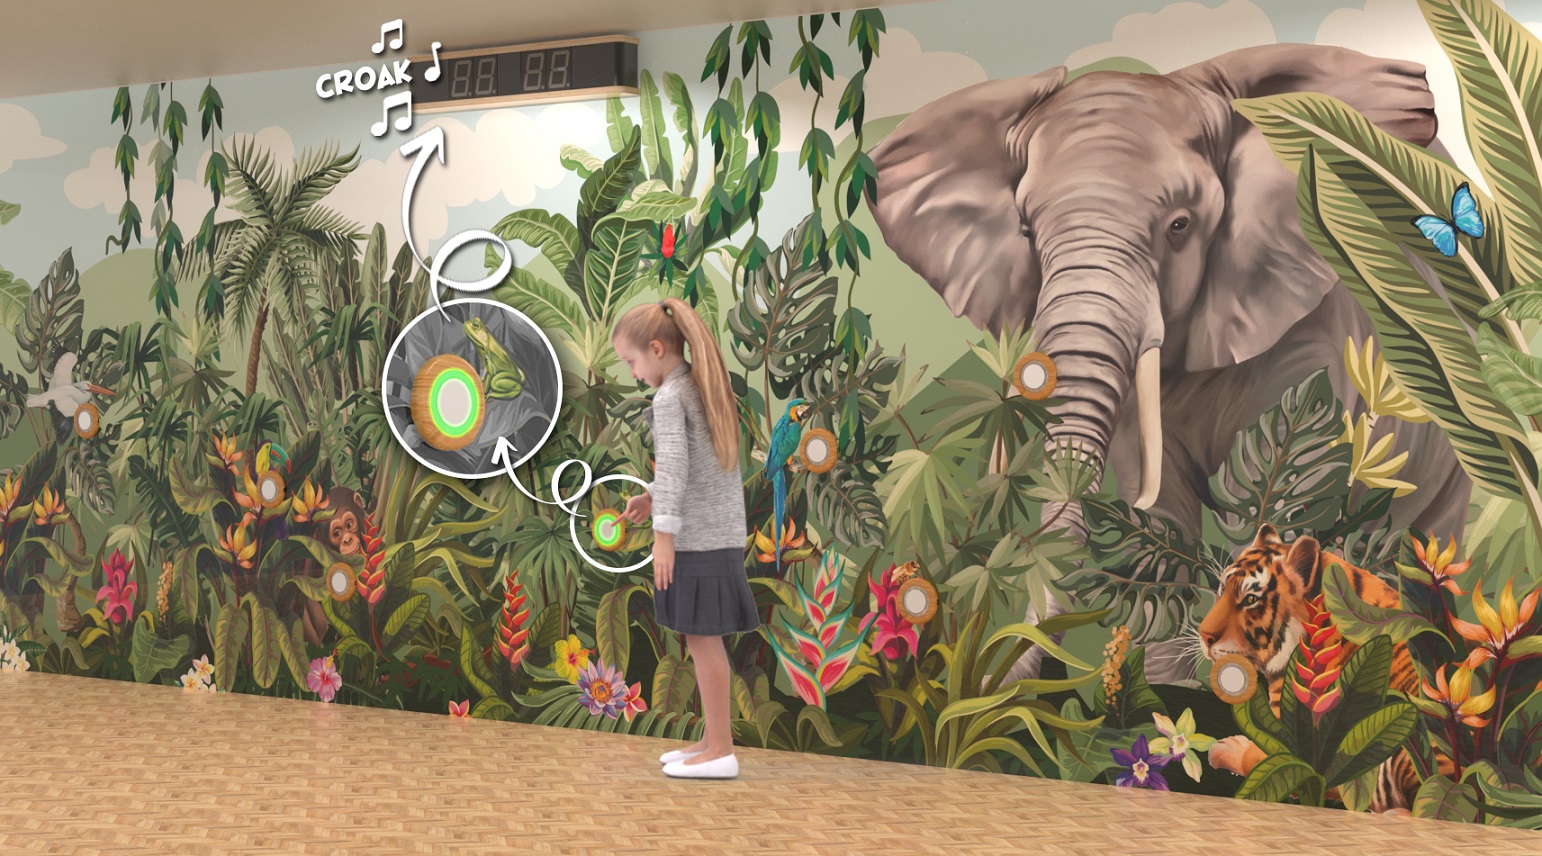 ściana doświadczalna dla dzieci ze słoniem